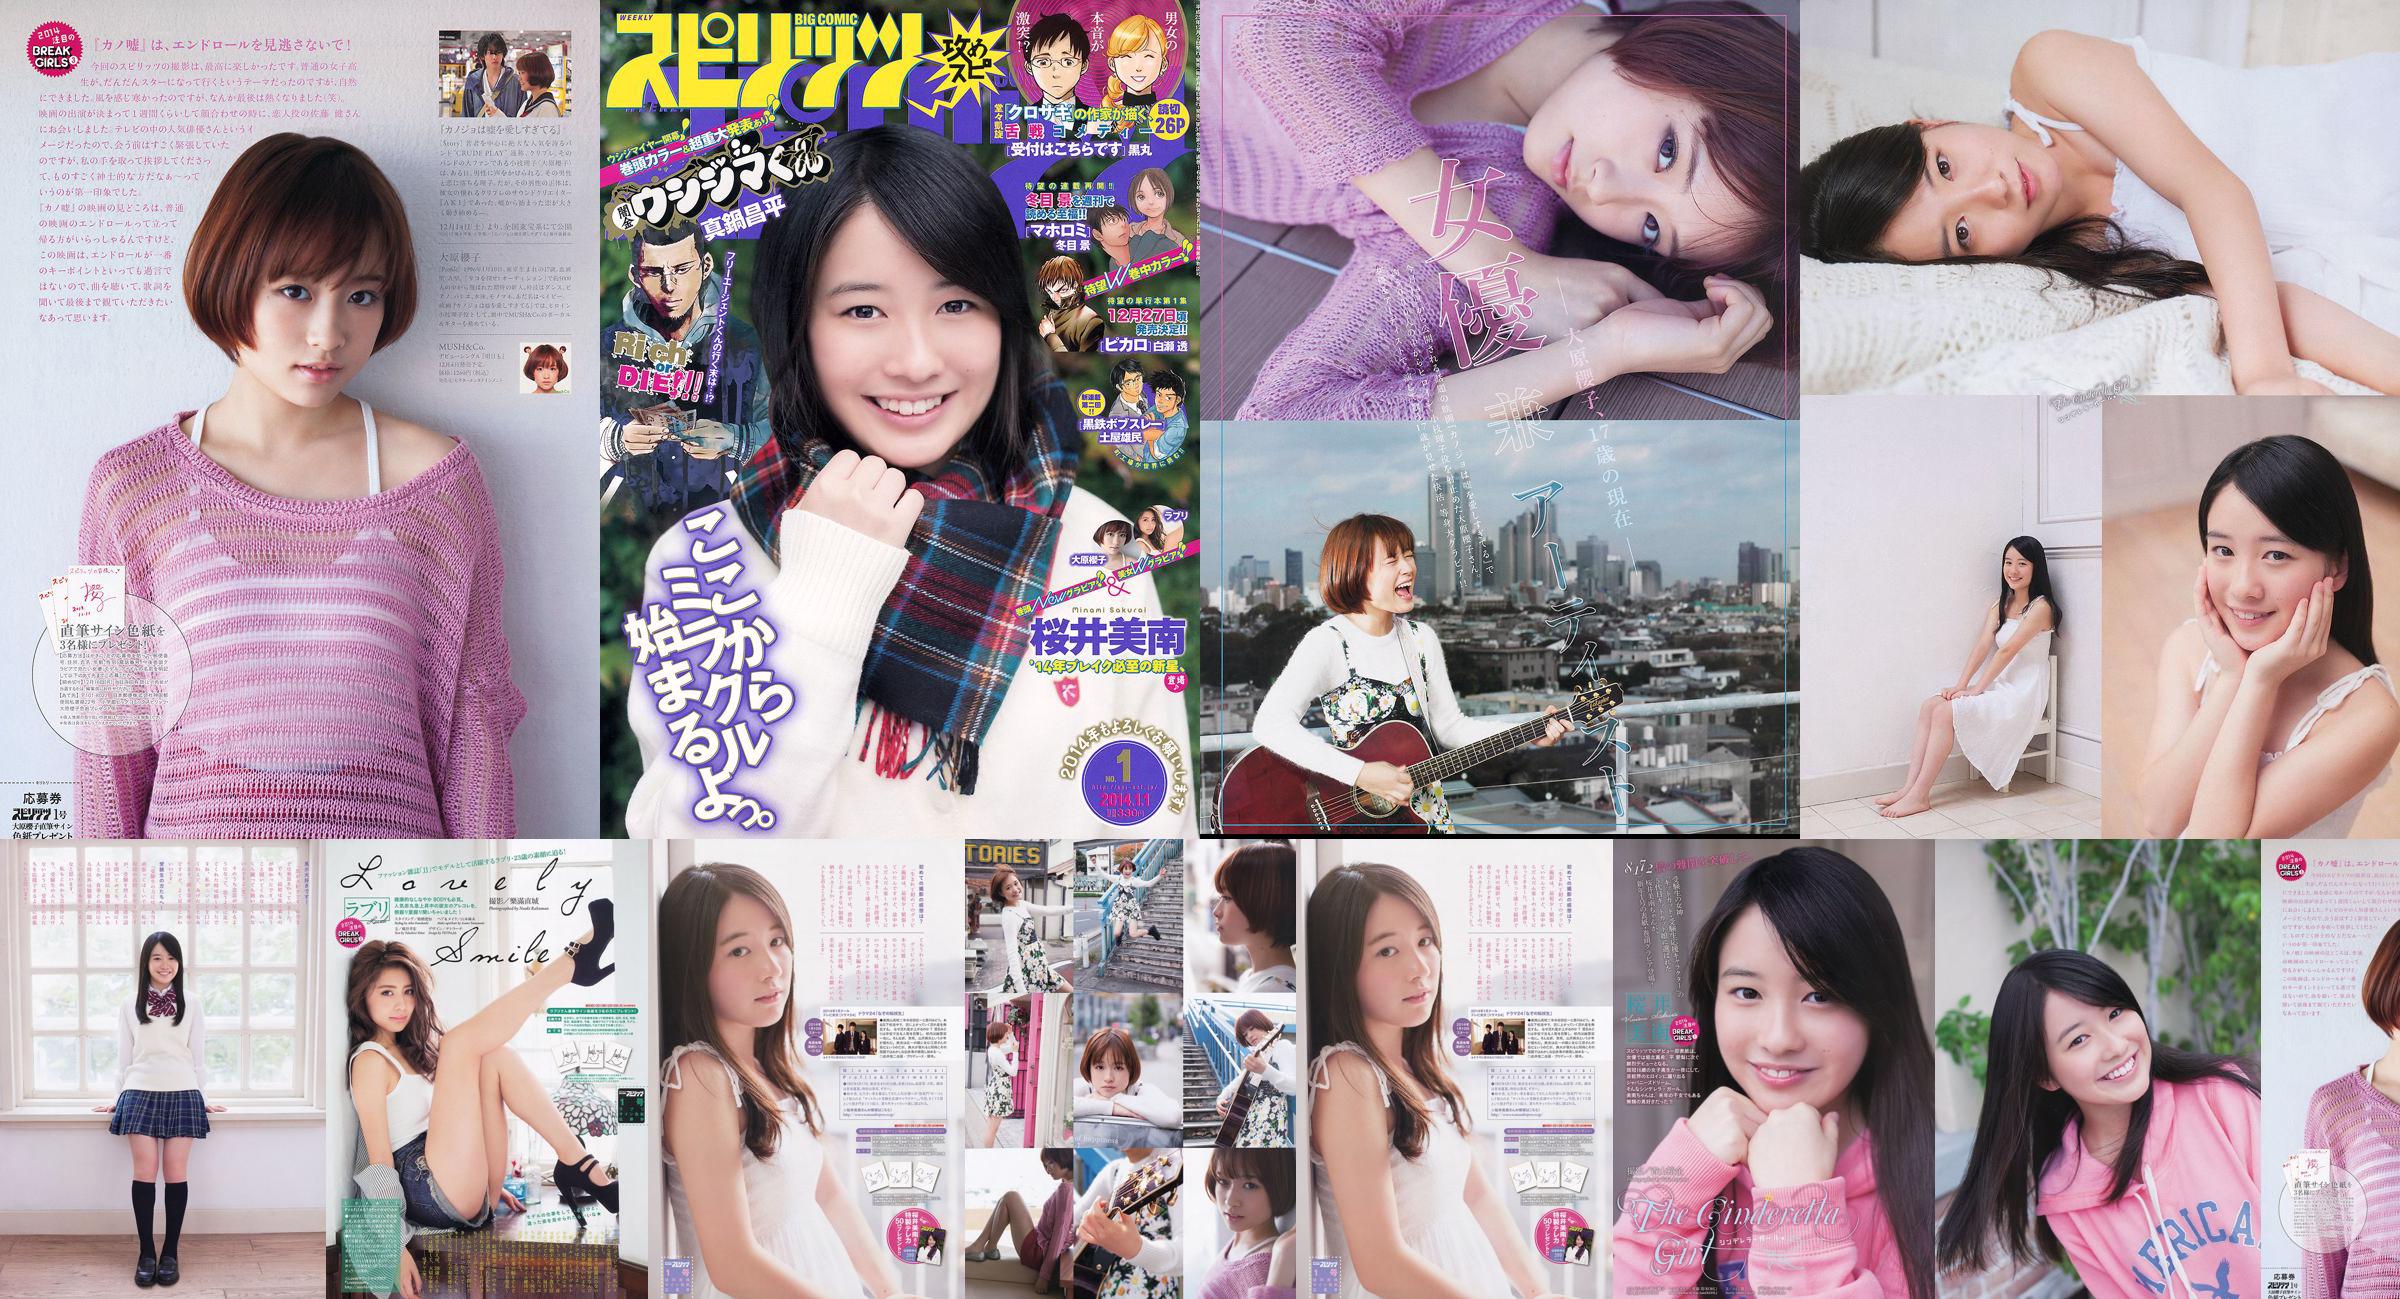 [Wöchentliche große Comic-Geister] Sakurai Minan Ohara Sakurako 2014 No.01 Photo Magazine No.8f5b8c Seite 2